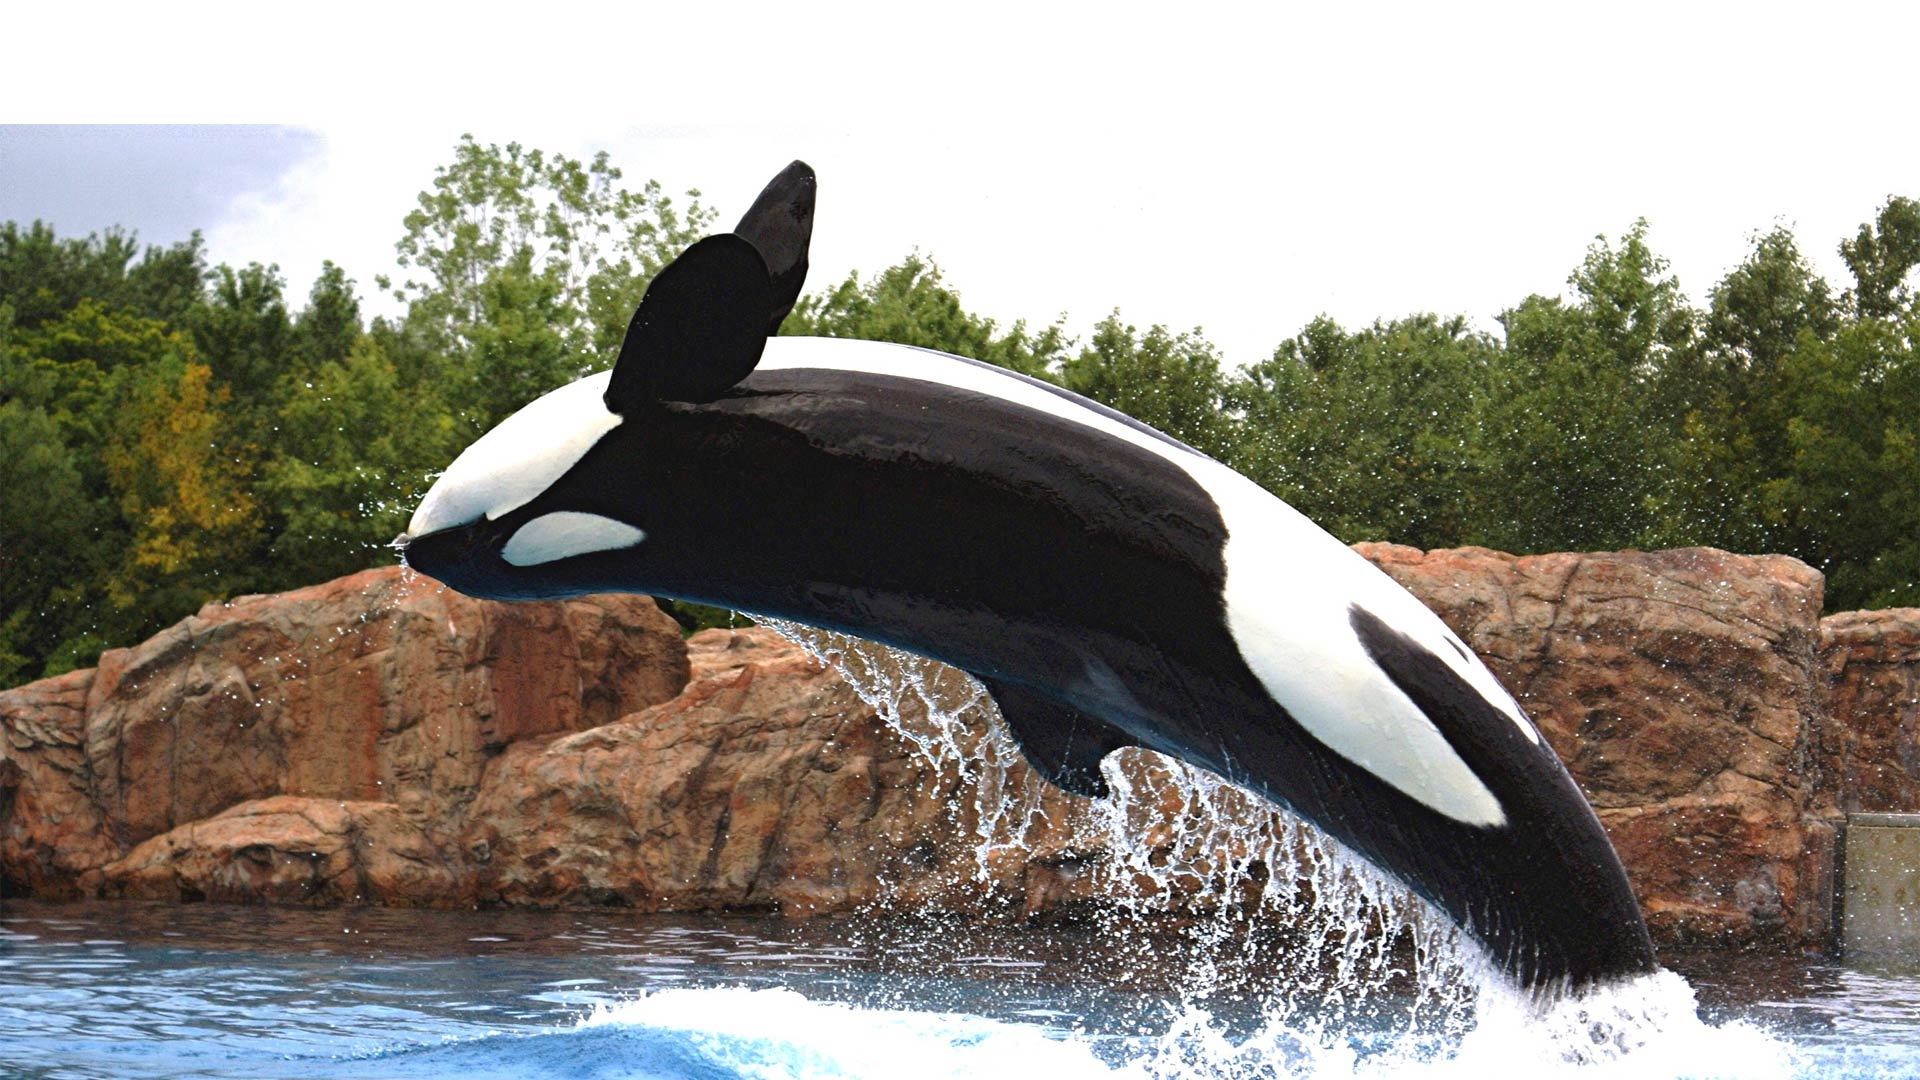 Los responsables de Seaquarium afirman que la orca está sana y trasladarla sería cruel y traumático